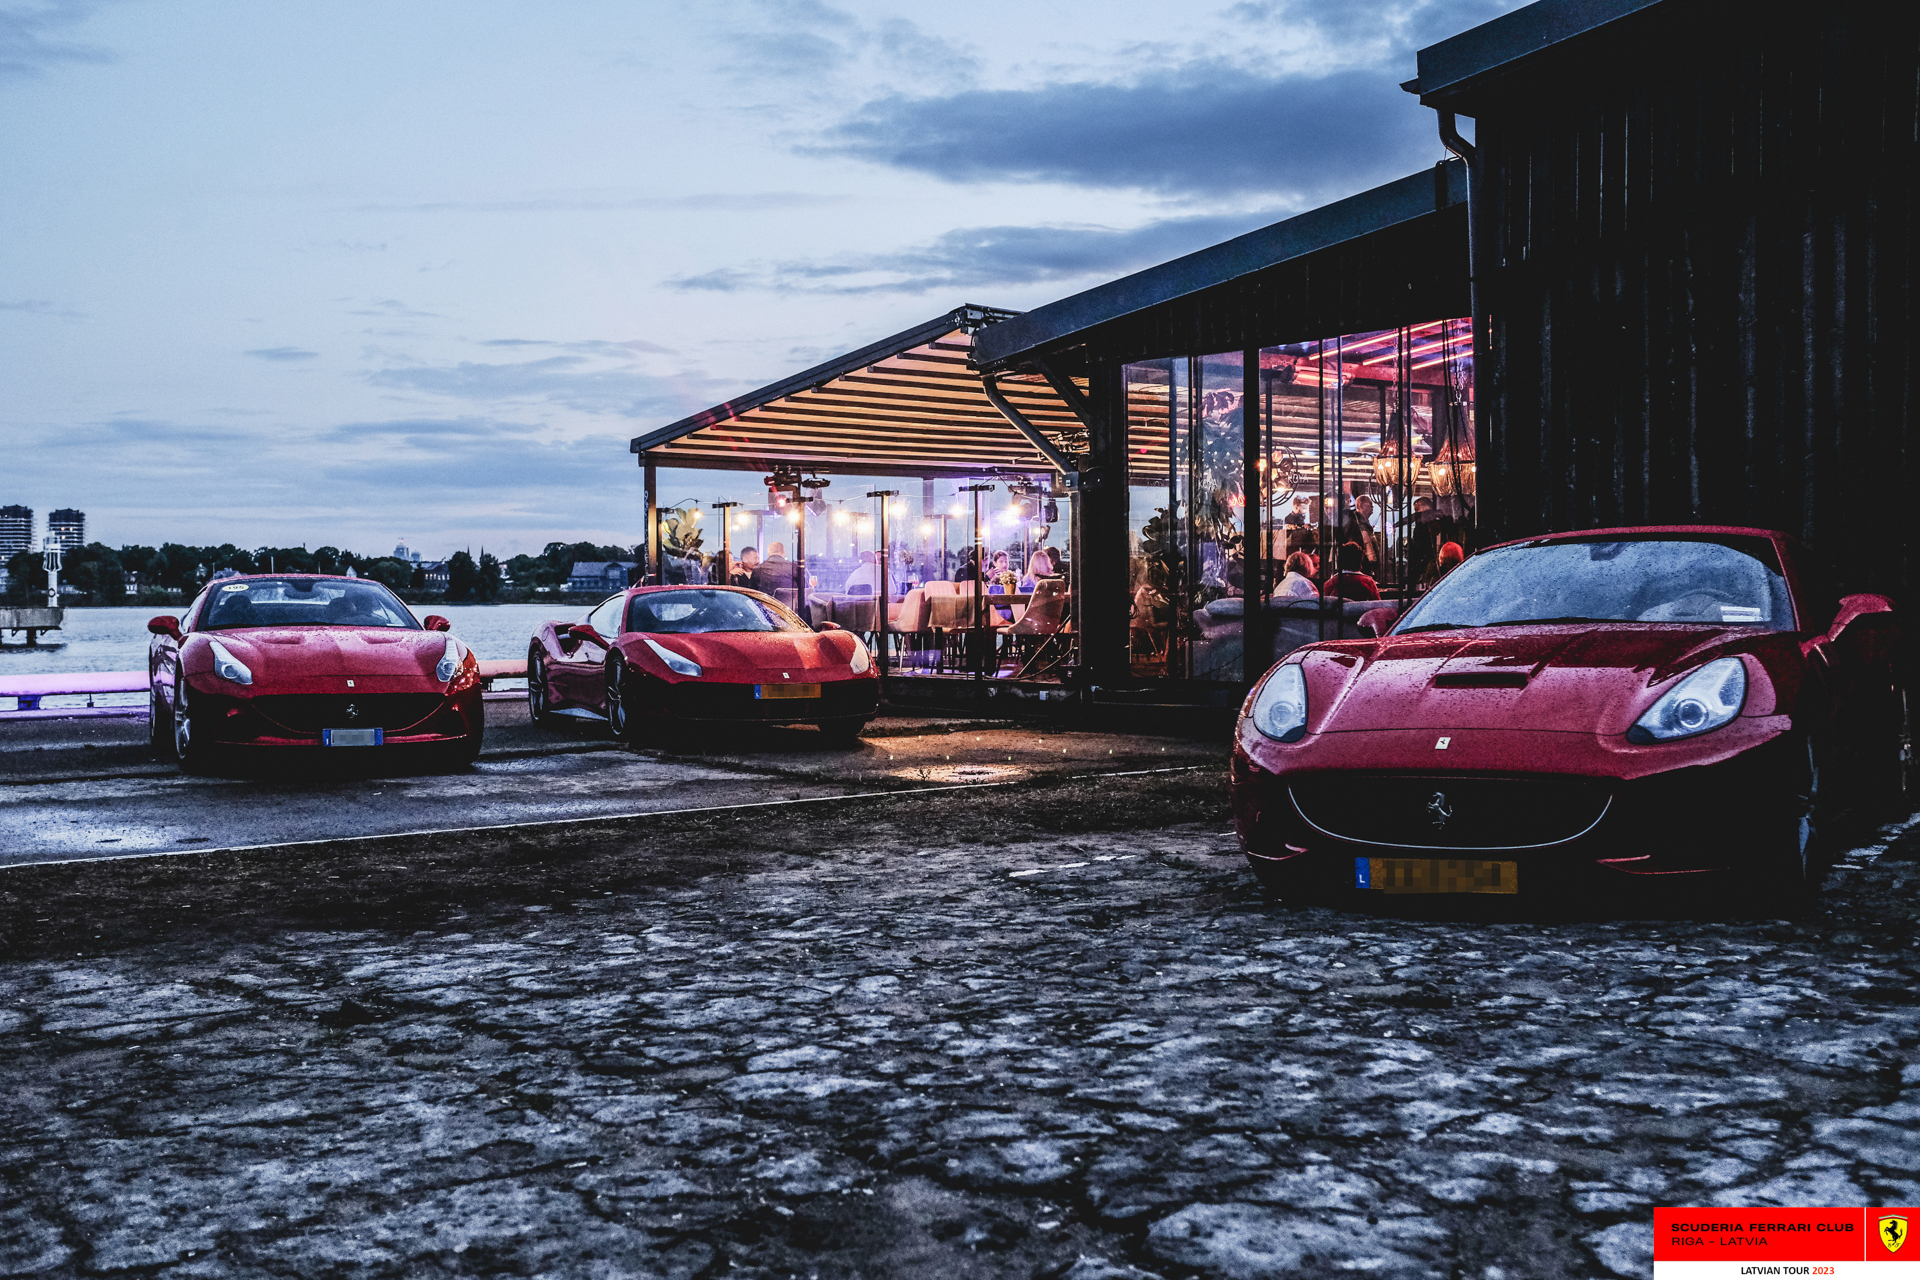 Ferraris parked in front of Koya. 